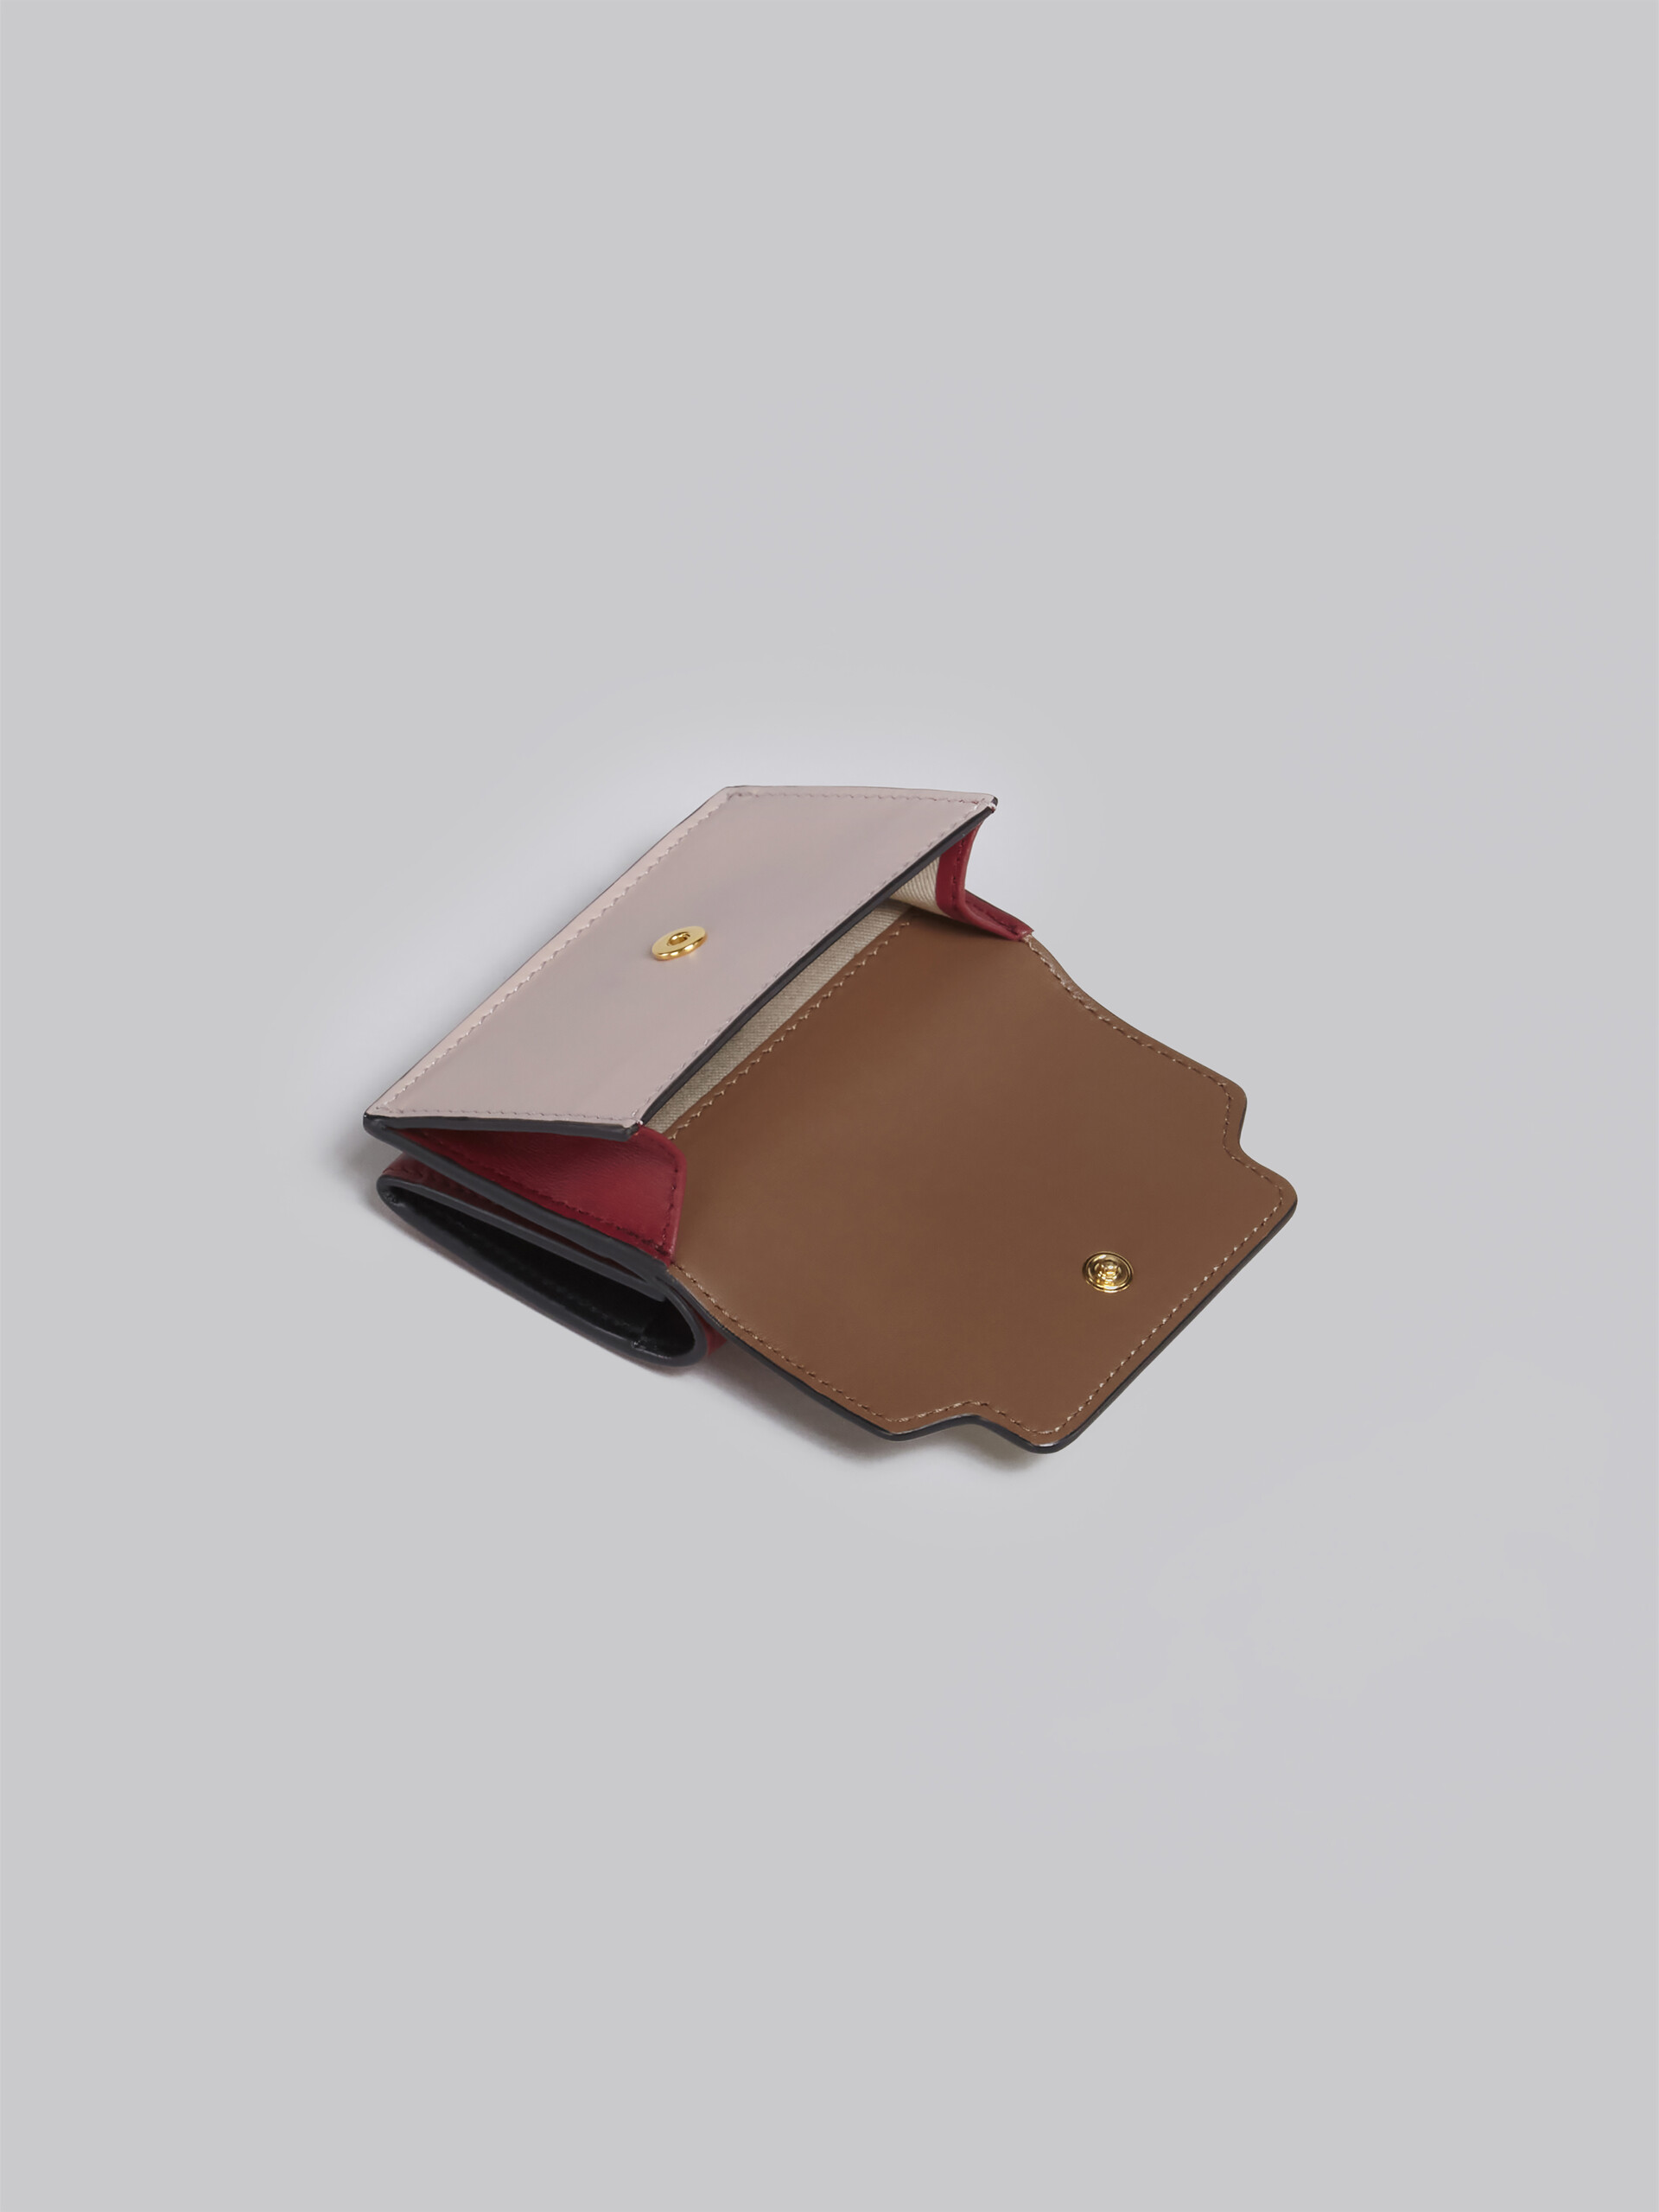 Portafoglio tri-fold in pelle marrone rosa e bordeaux - Portafogli - Image 5